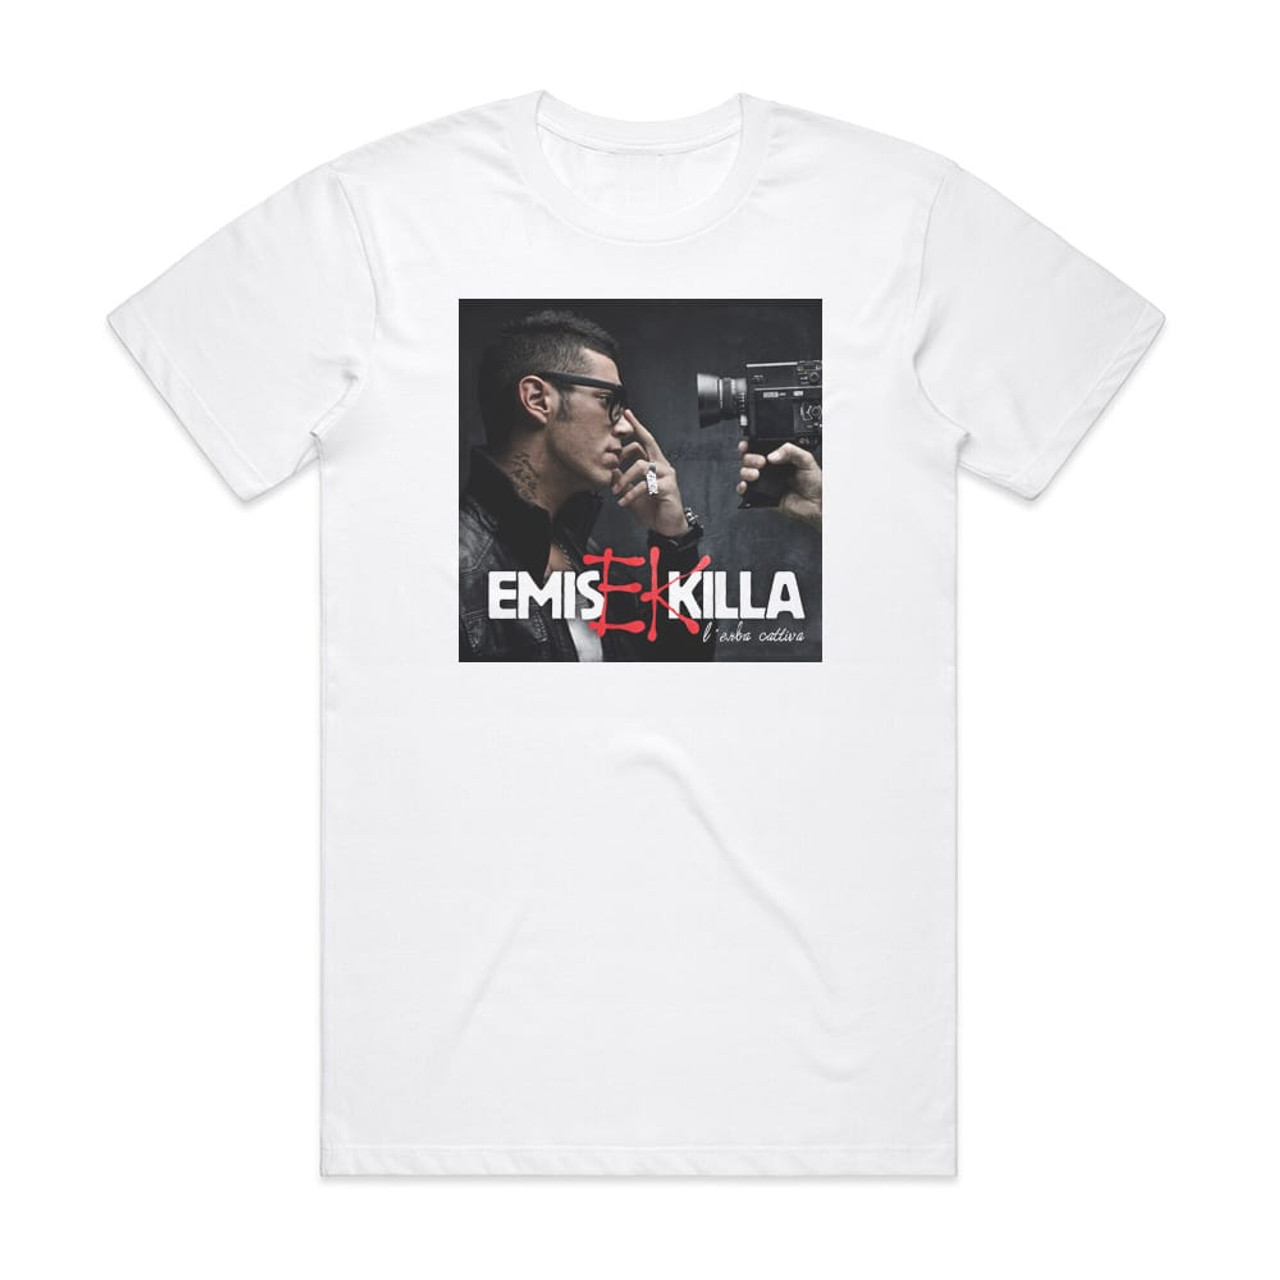 Emis Killa Lerba Cattiva Album Cover T-Shirt White